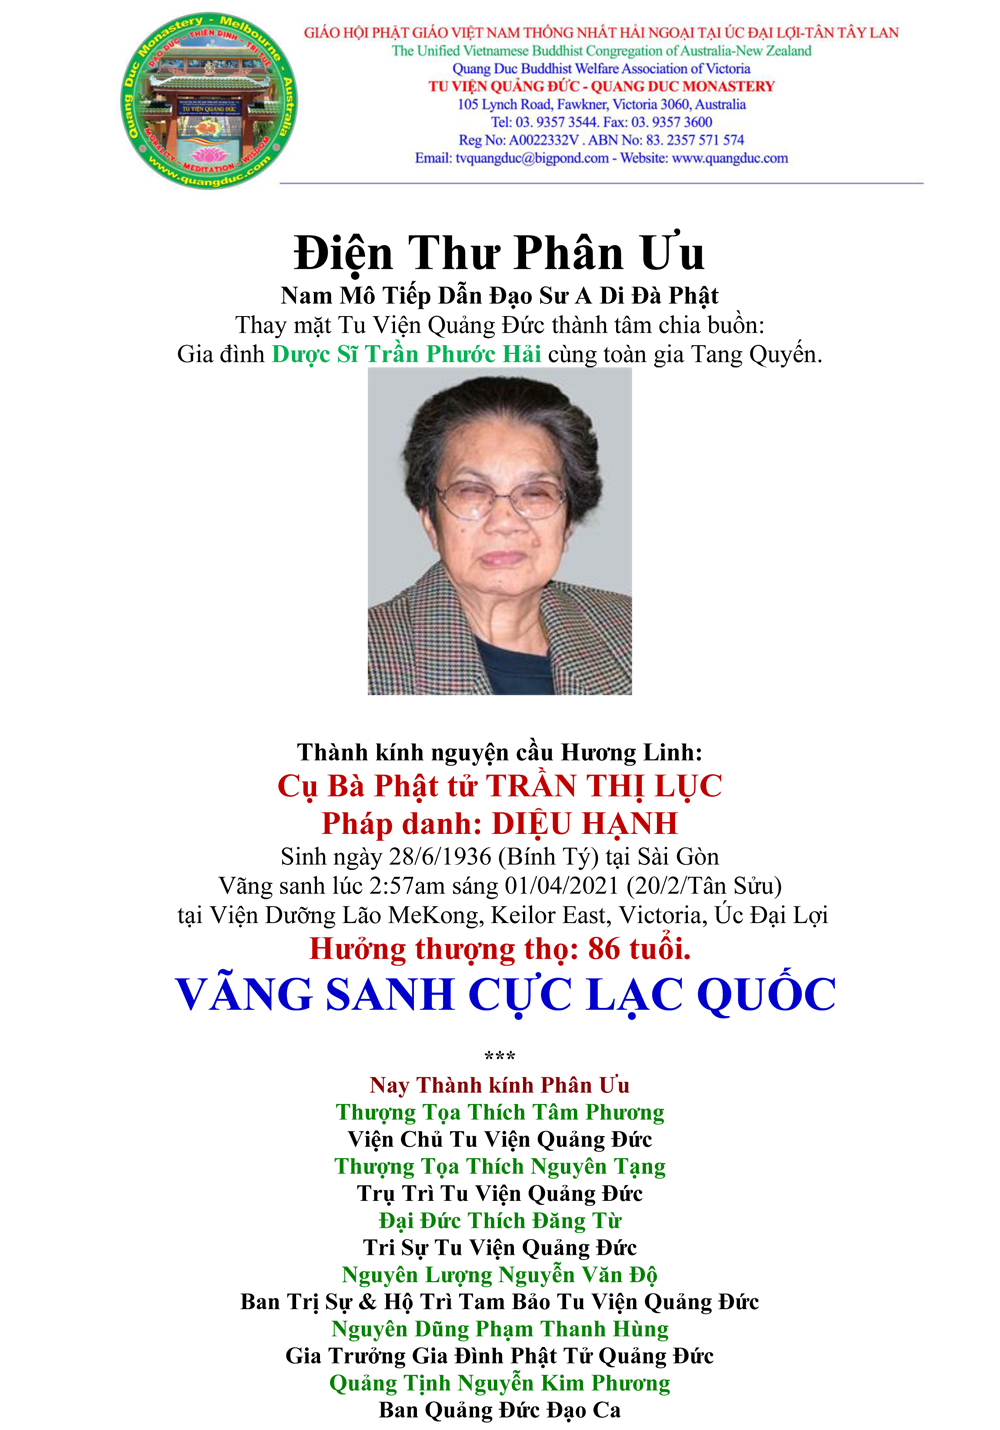 2-Dien Thu Phan Uu_Gia dinh_Cu ba_Tran Thi Luc-1